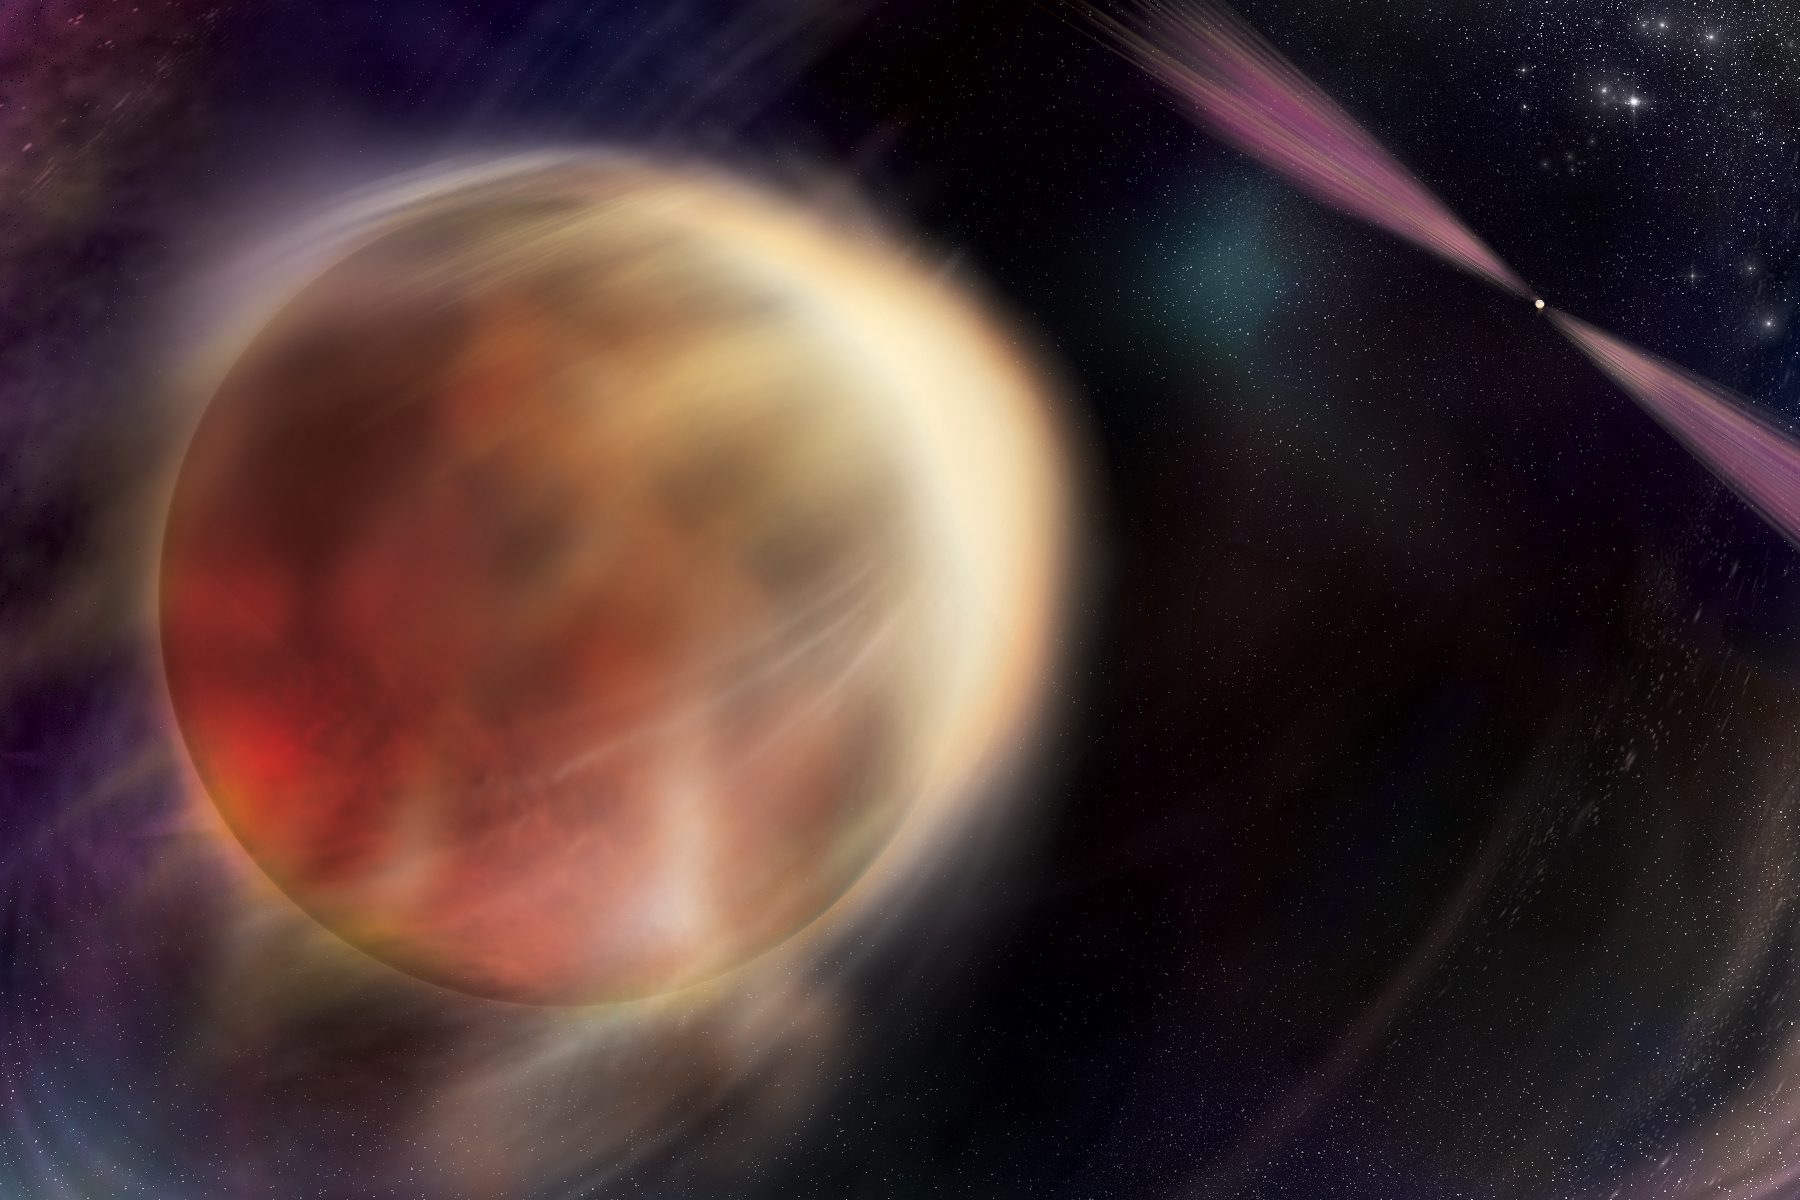 Une étoile en orbite autour d'un reste stellaire super dense en rotation rapide appelé pulsar dans cette illustration. Le pulsar émet des faisceaux de lumière à plusieurs longueurs d'onde qui tournent tel un phare.  © Nasa, Sonoma State University, Aurore Simonnet